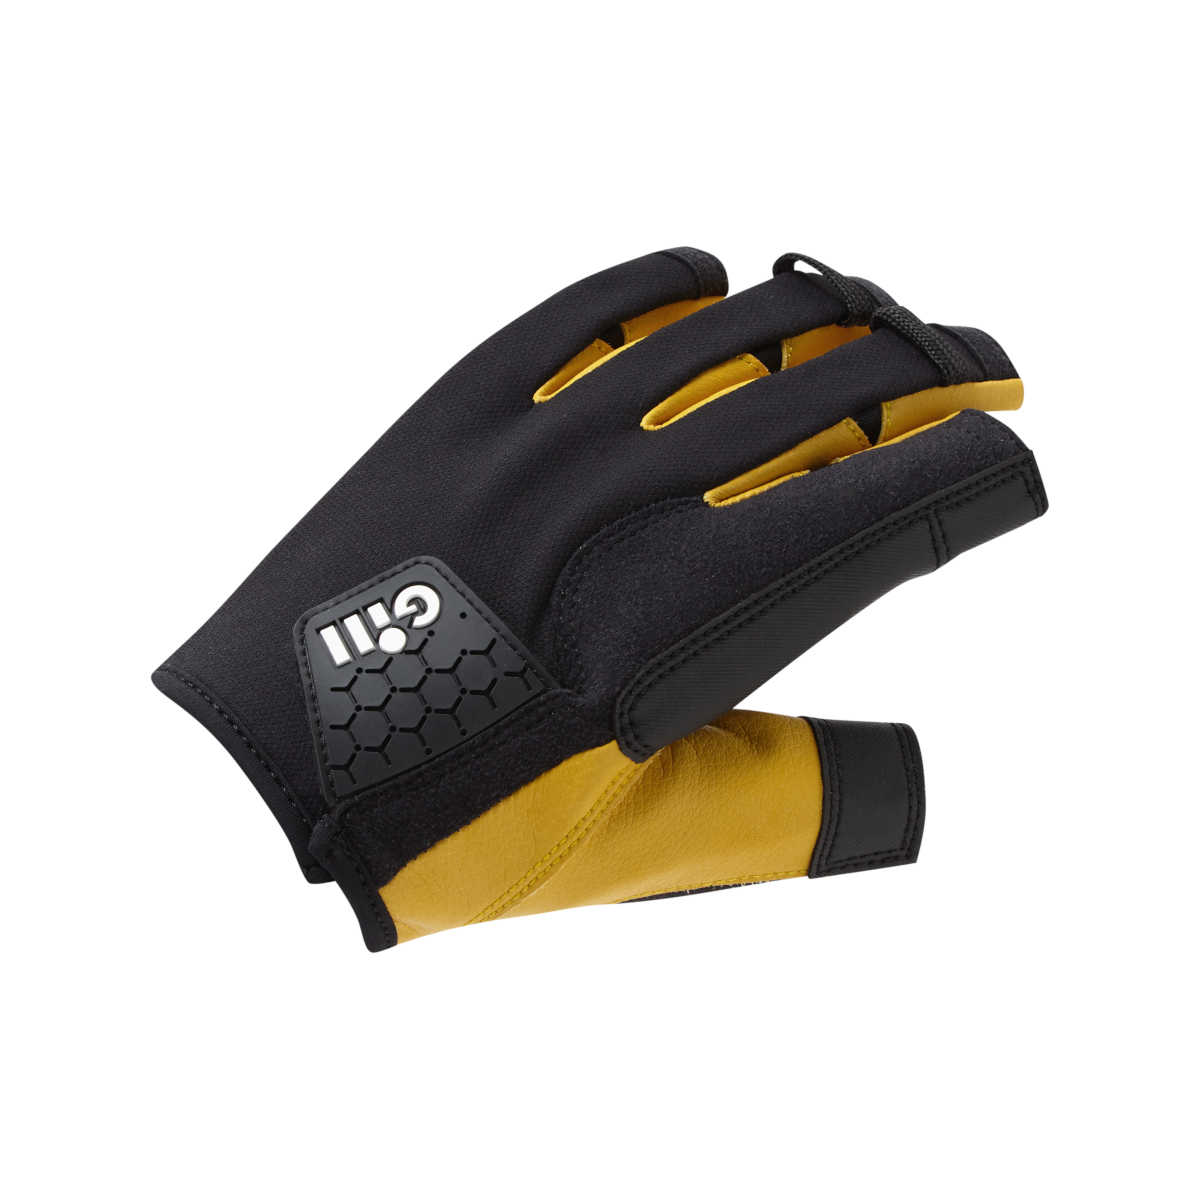 Gill Pro gants de voile à doigts courts - noir, taille L